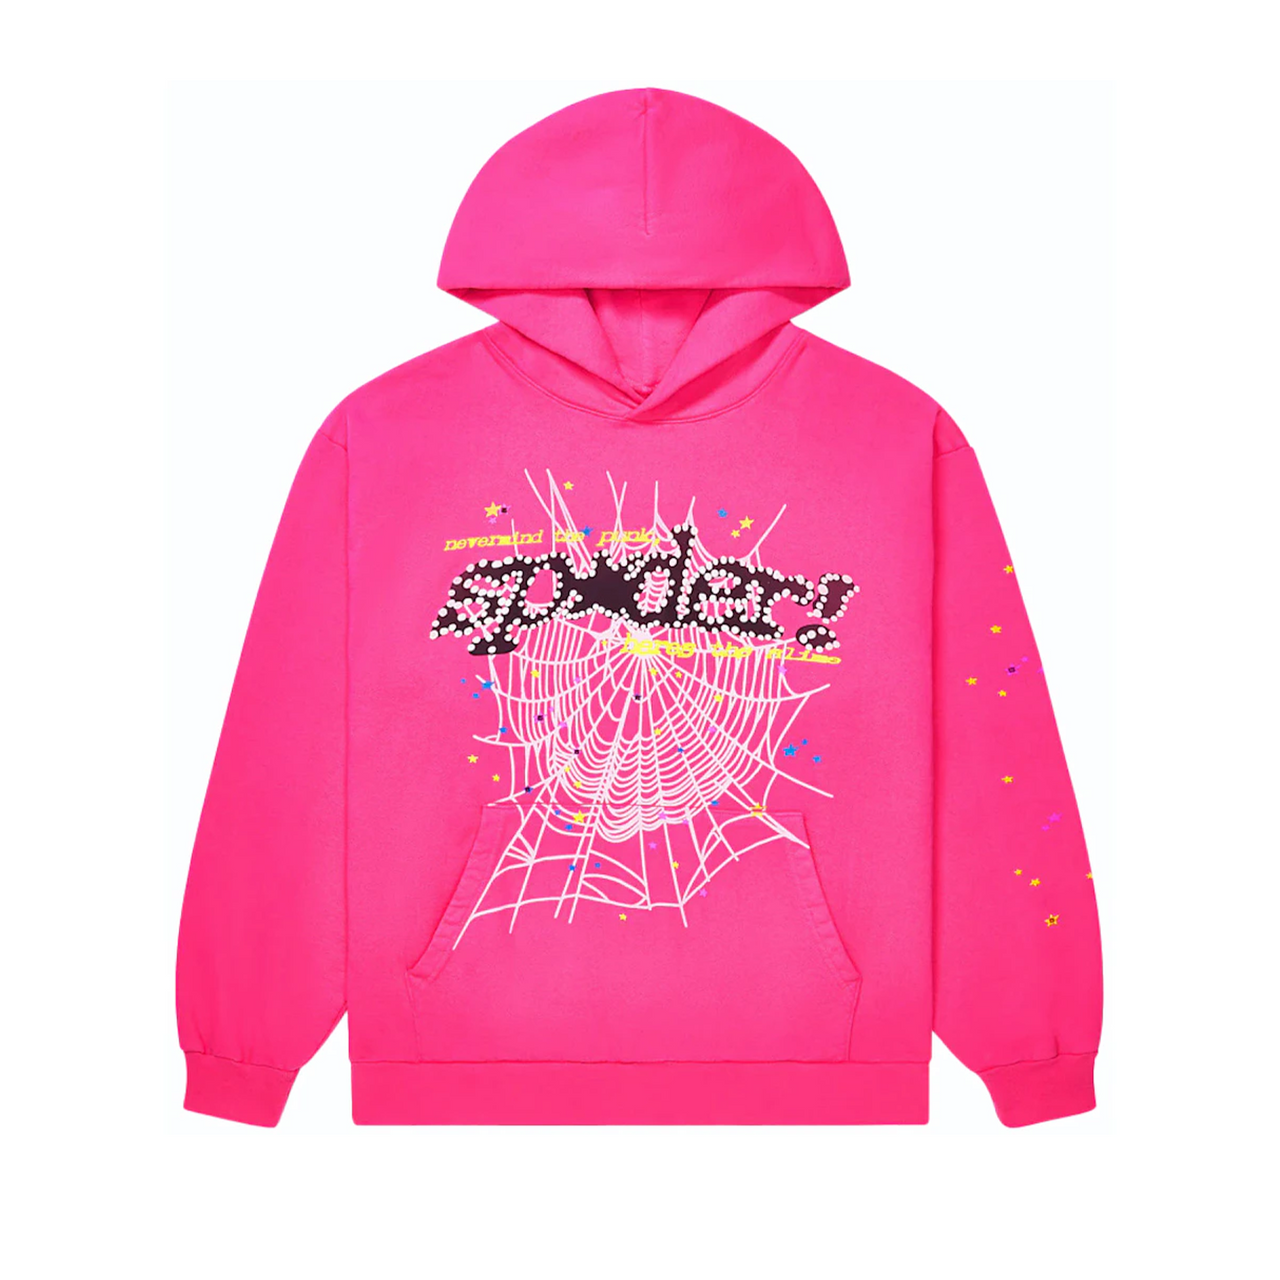 Sp5der Worldwide Punk V2 Sweatshirt Magenta